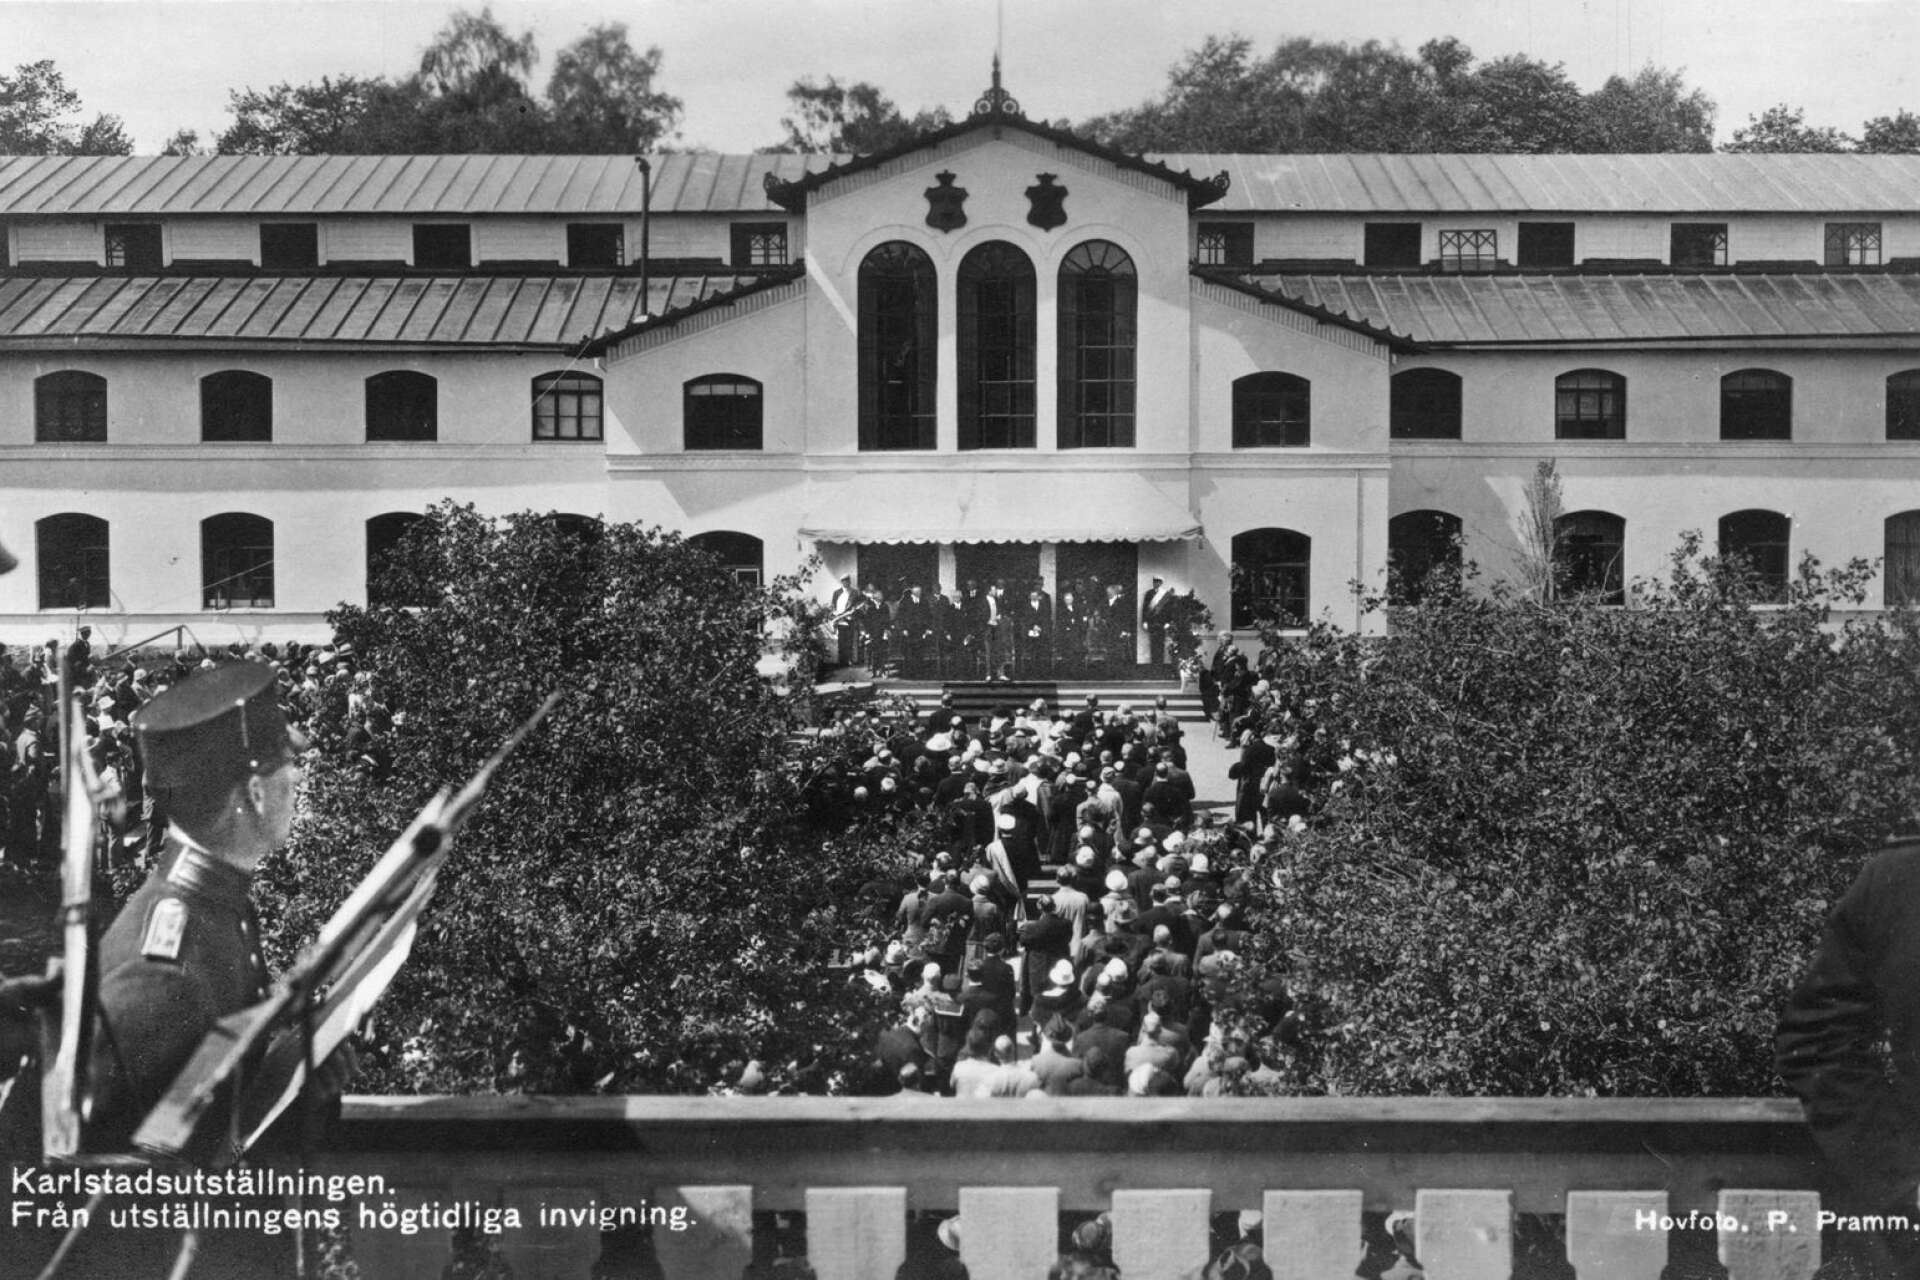 Här invigdes Karlstadsutställningen år 1927.